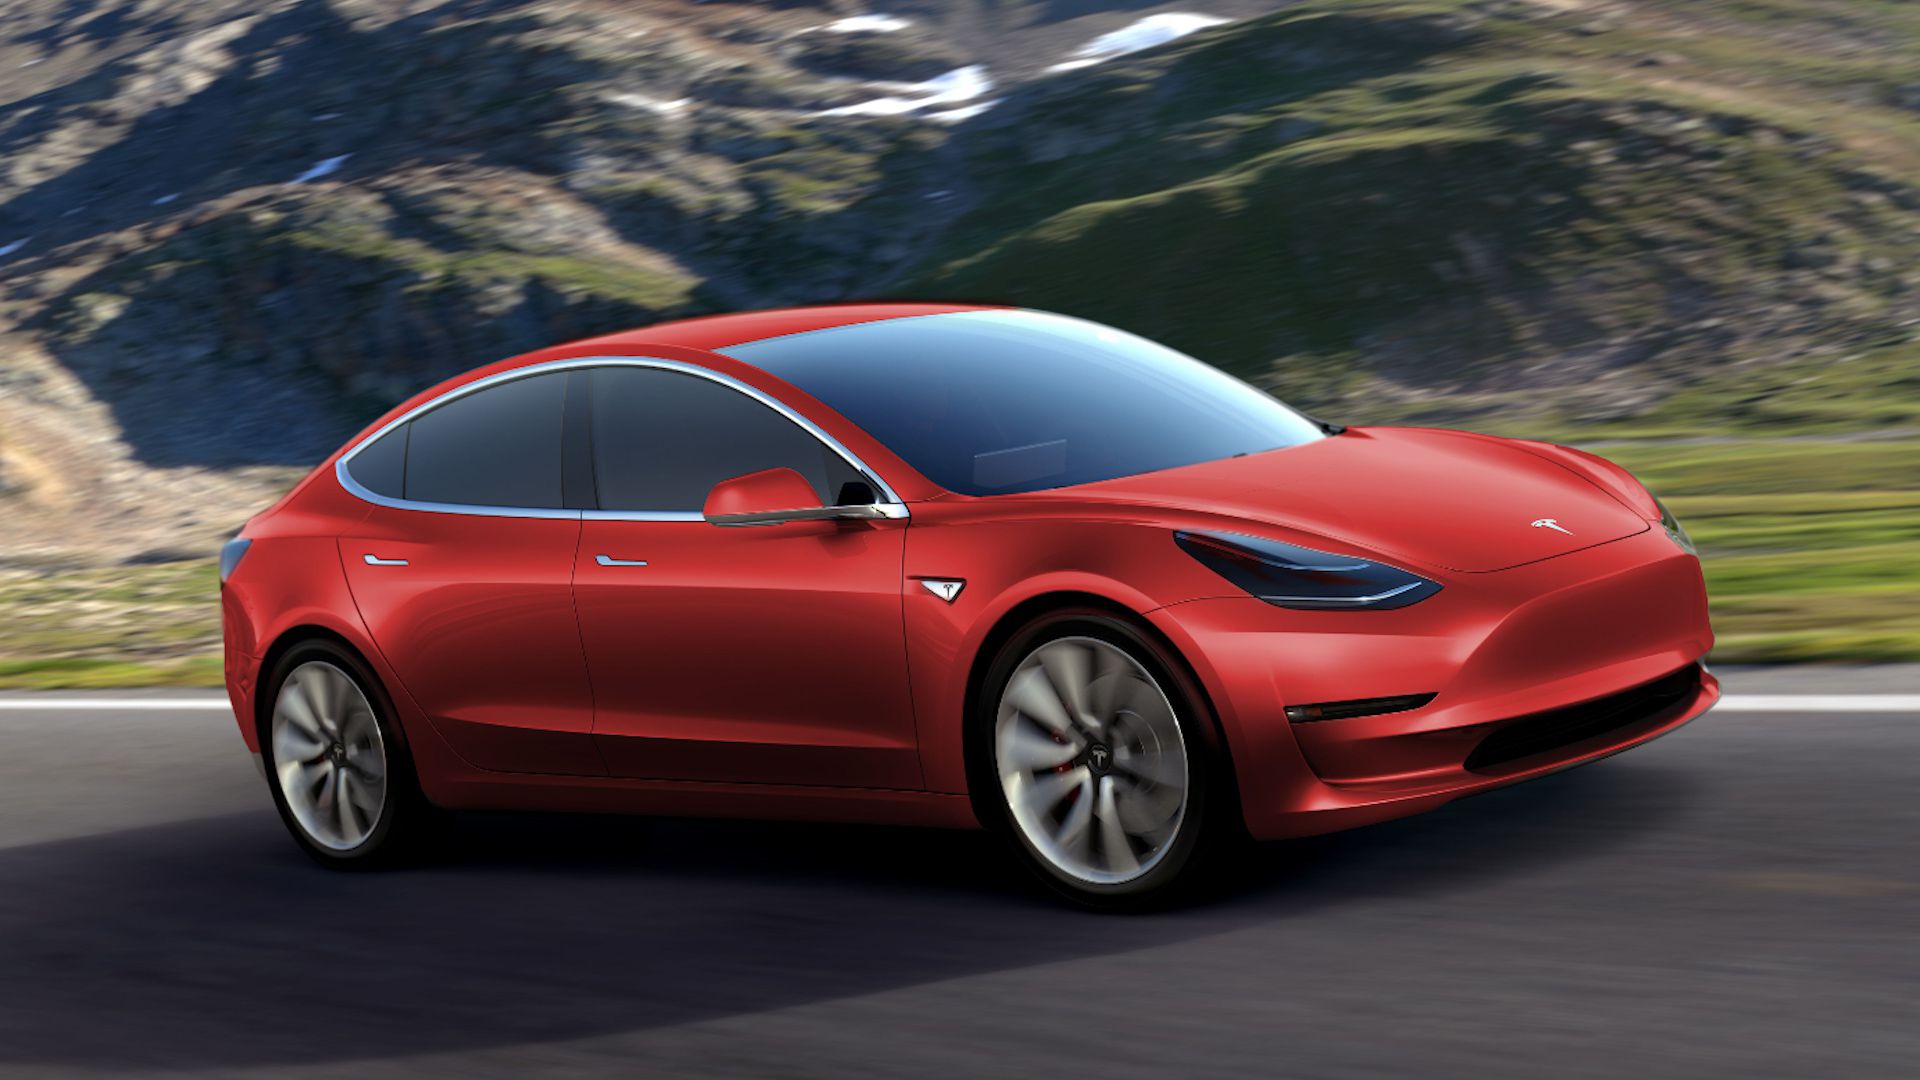 35+] Tesla Model 3 Wallpapers - WallpaperSafari